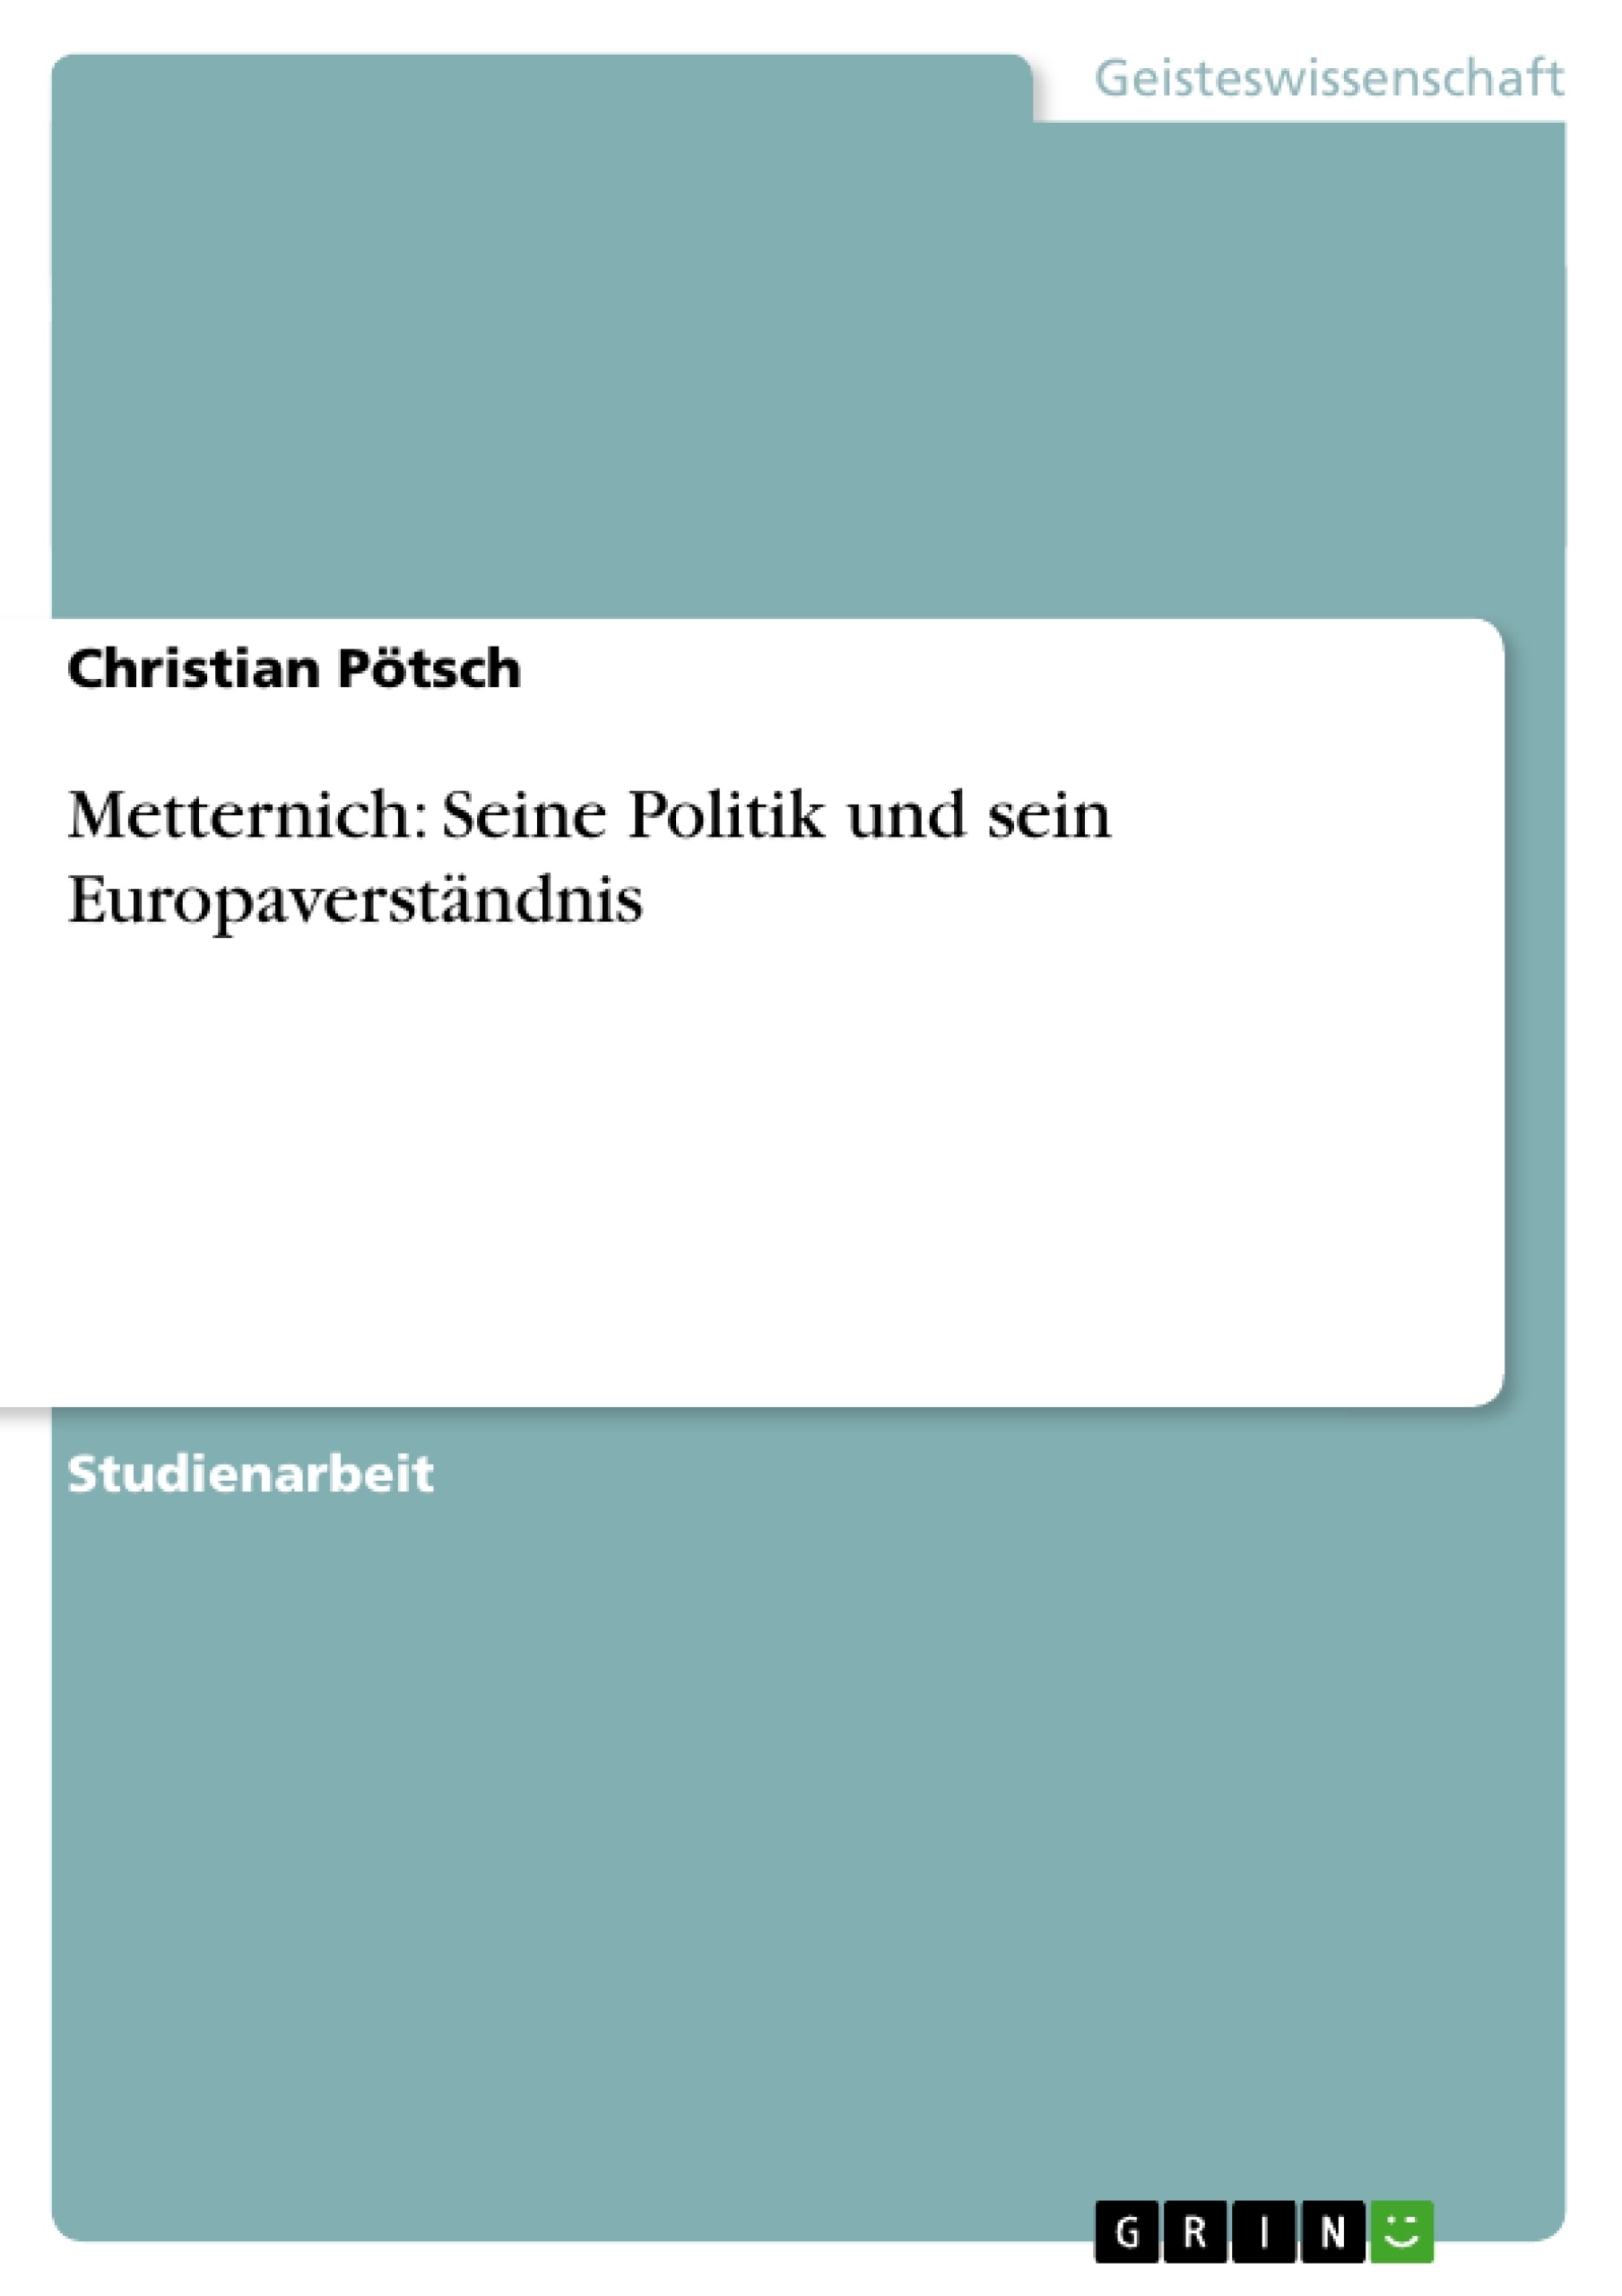 Title: Metternich: Seine Politik und sein Europaverständnis